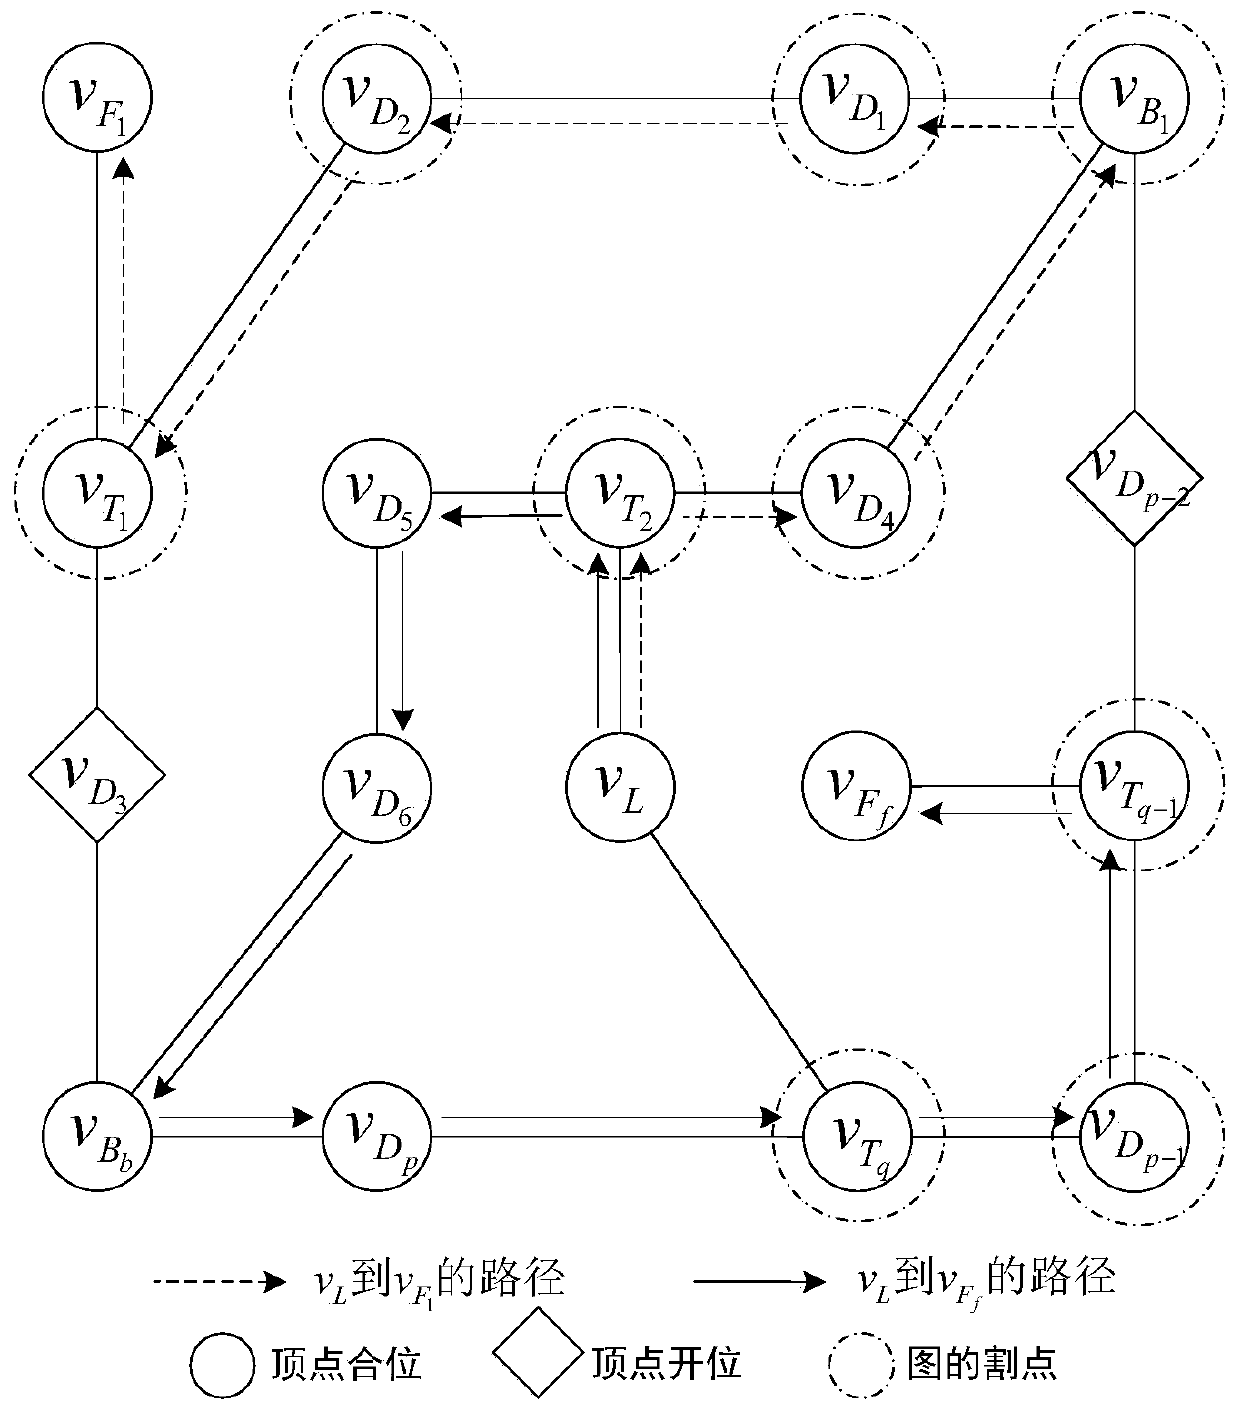 DC system multi-valve-group last circuit breaker identification method based on improved Tarjan algorithm